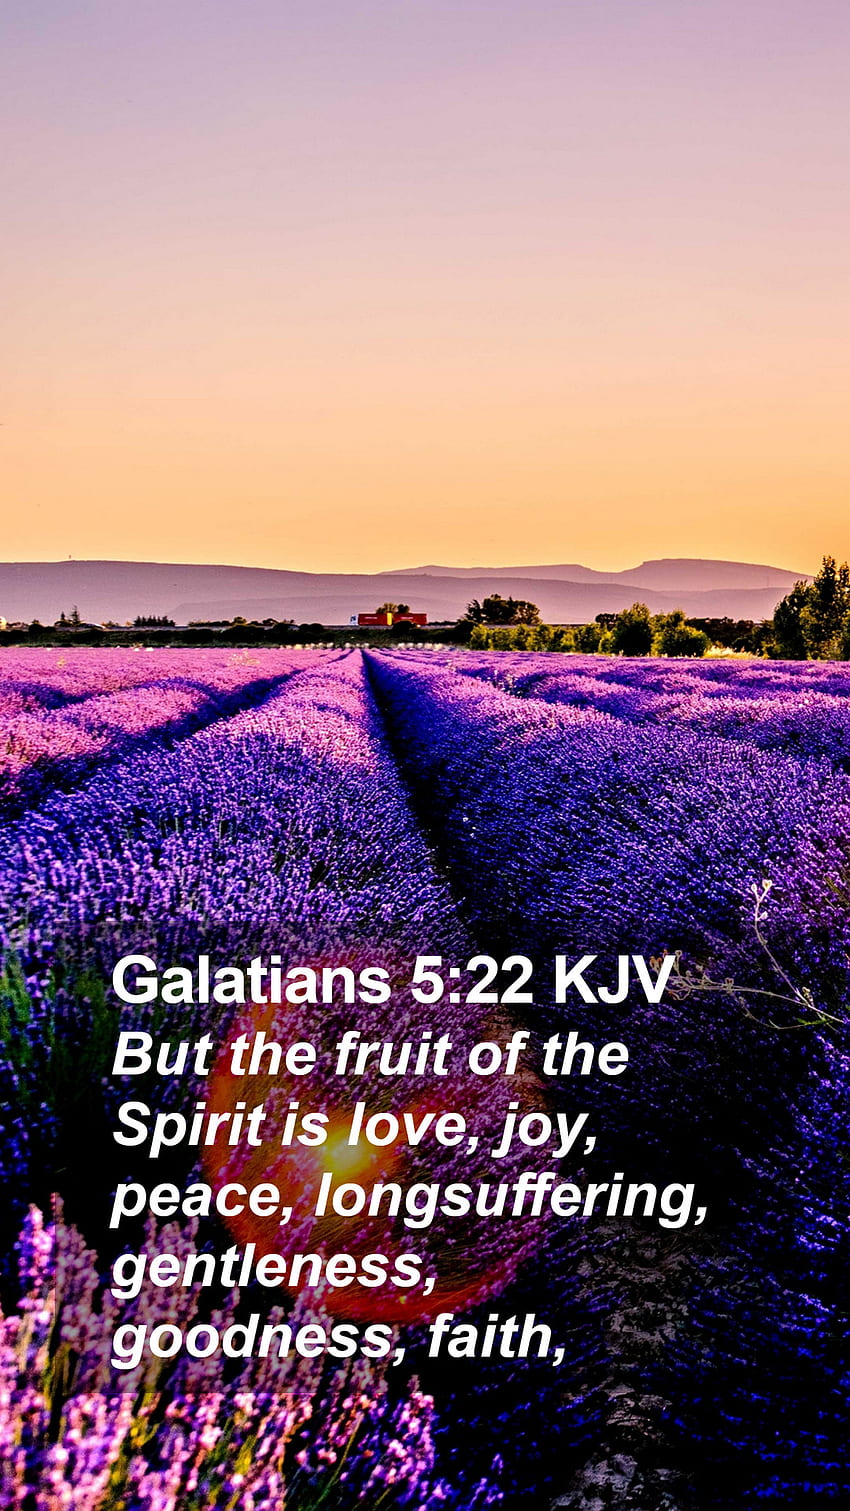 Galacjan 5:22 KJV Telefon komórkowy - Ale owocem Ducha jest miłość, radość, pokój, Duch Święty iPhone Tapeta na telefon HD